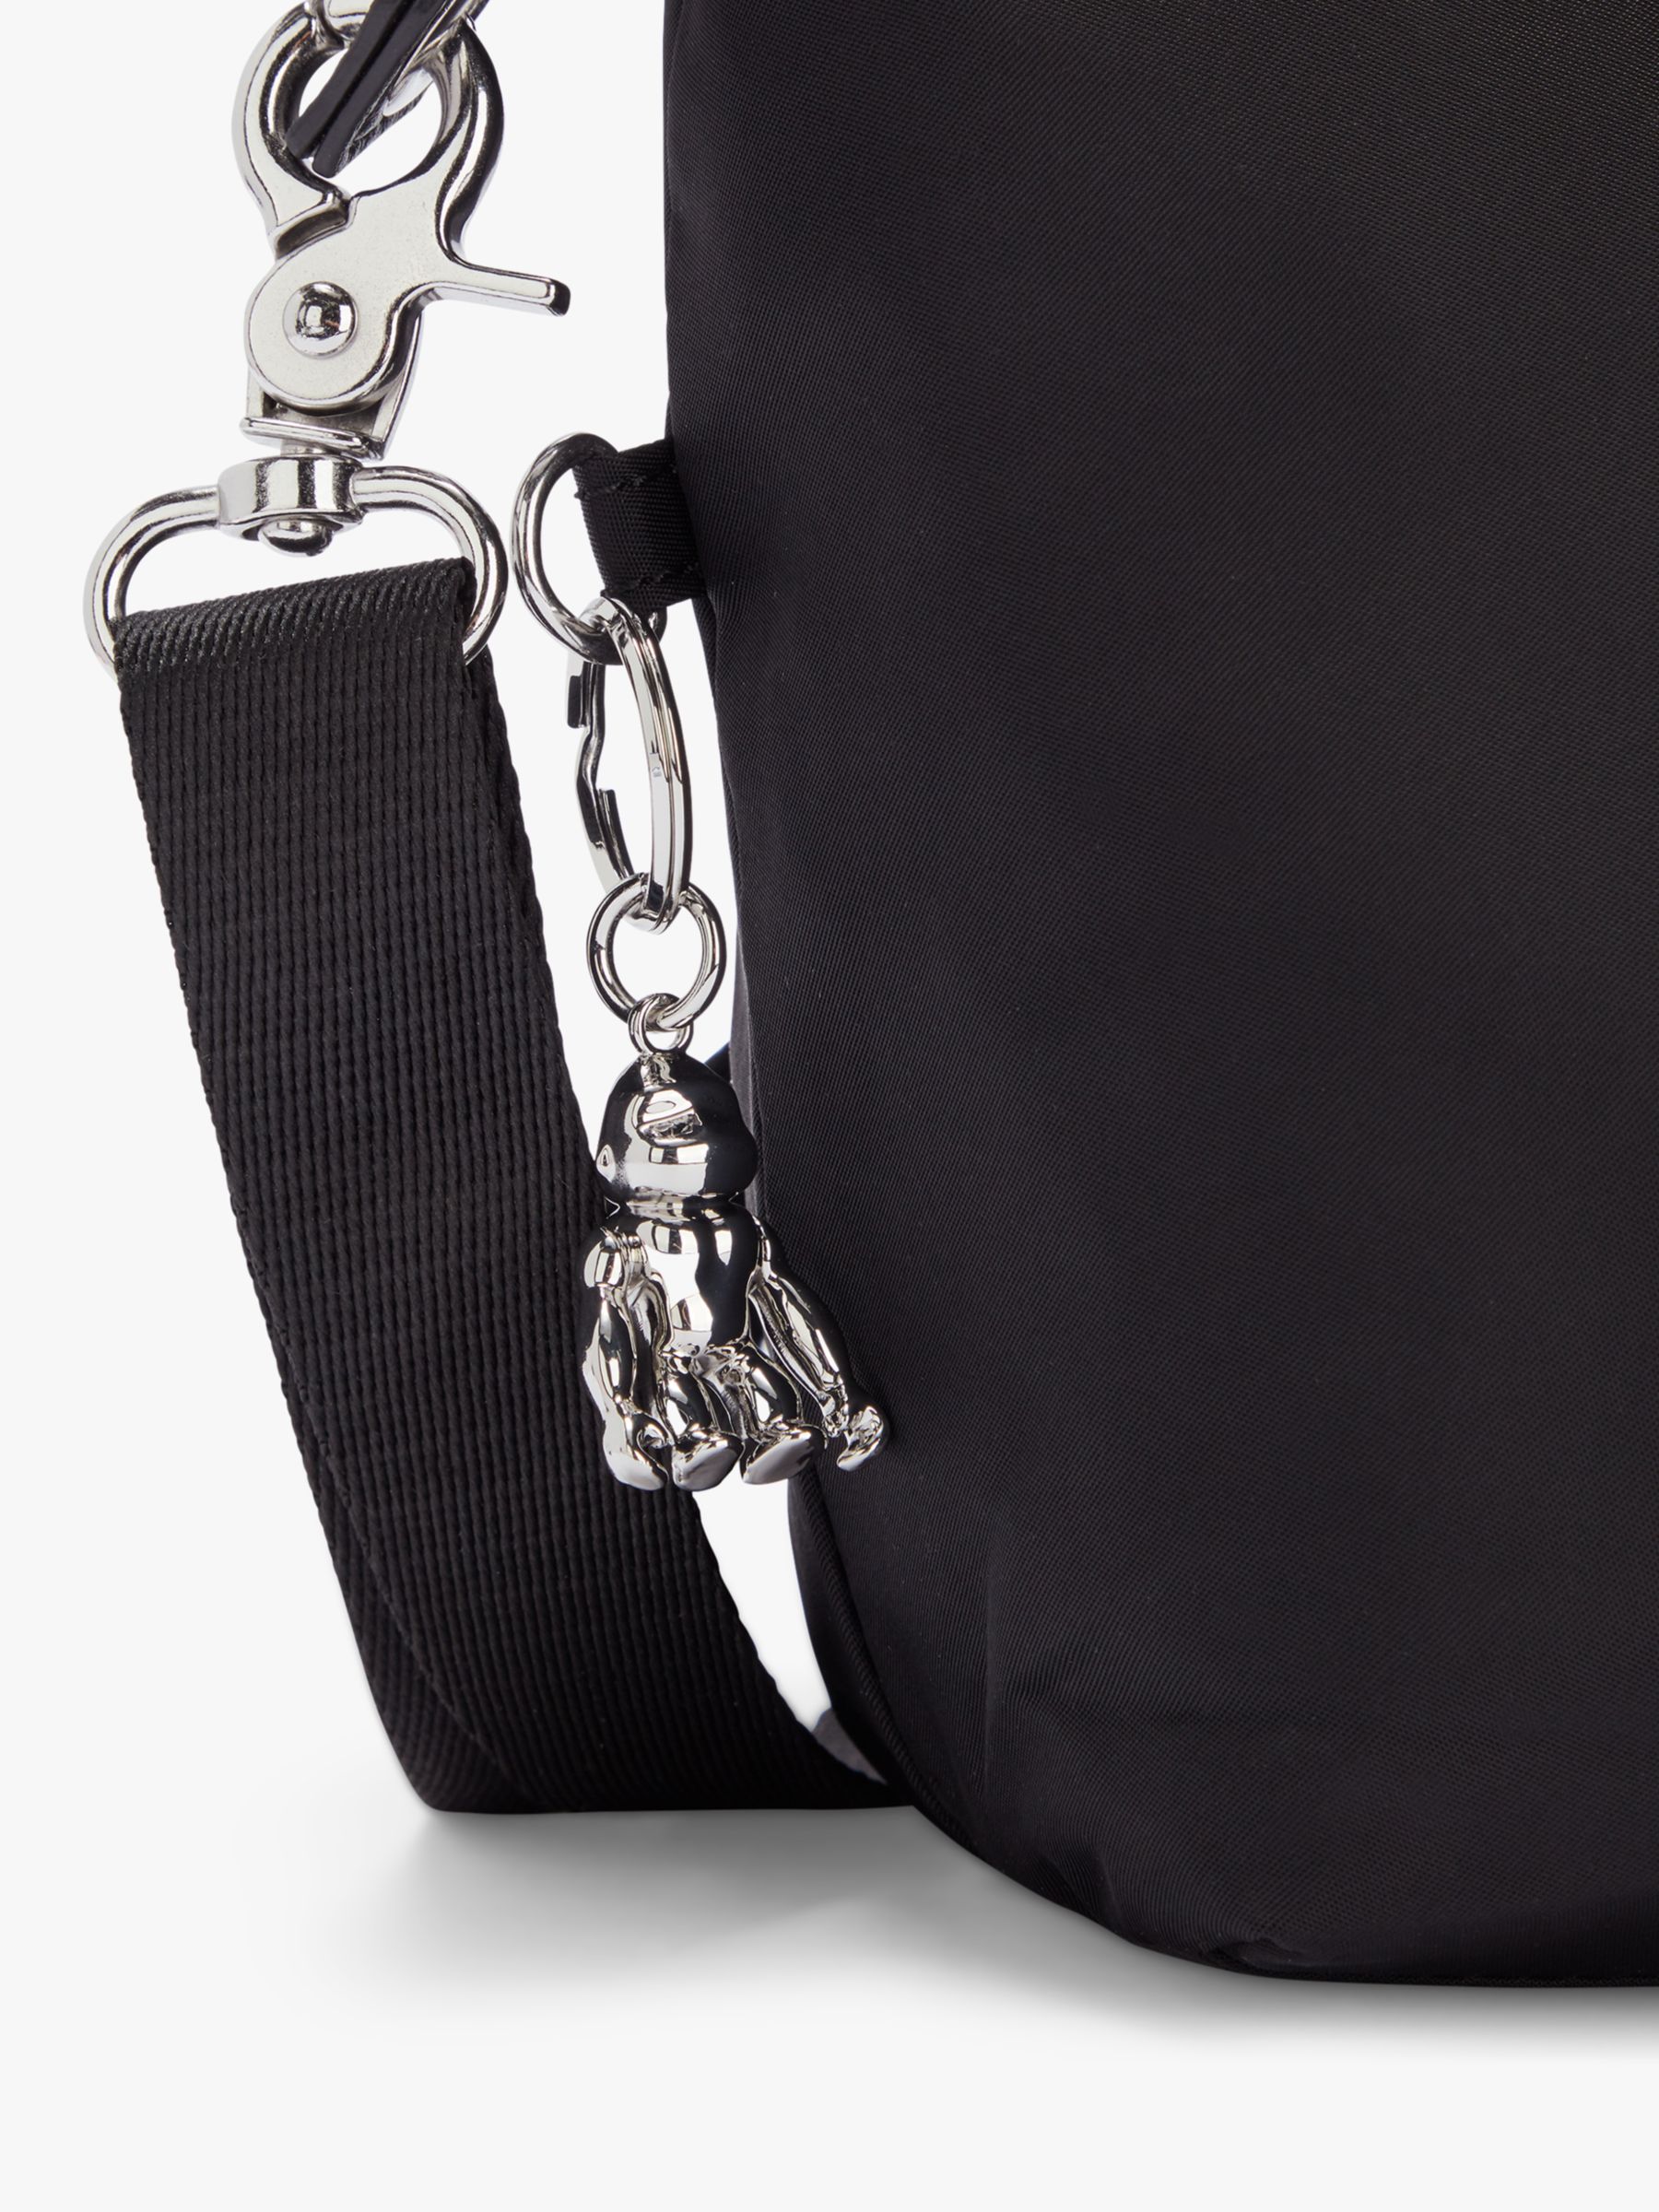 Kipling Kala Compact Multiway Bag, Paka Black at John Lewis & Partners